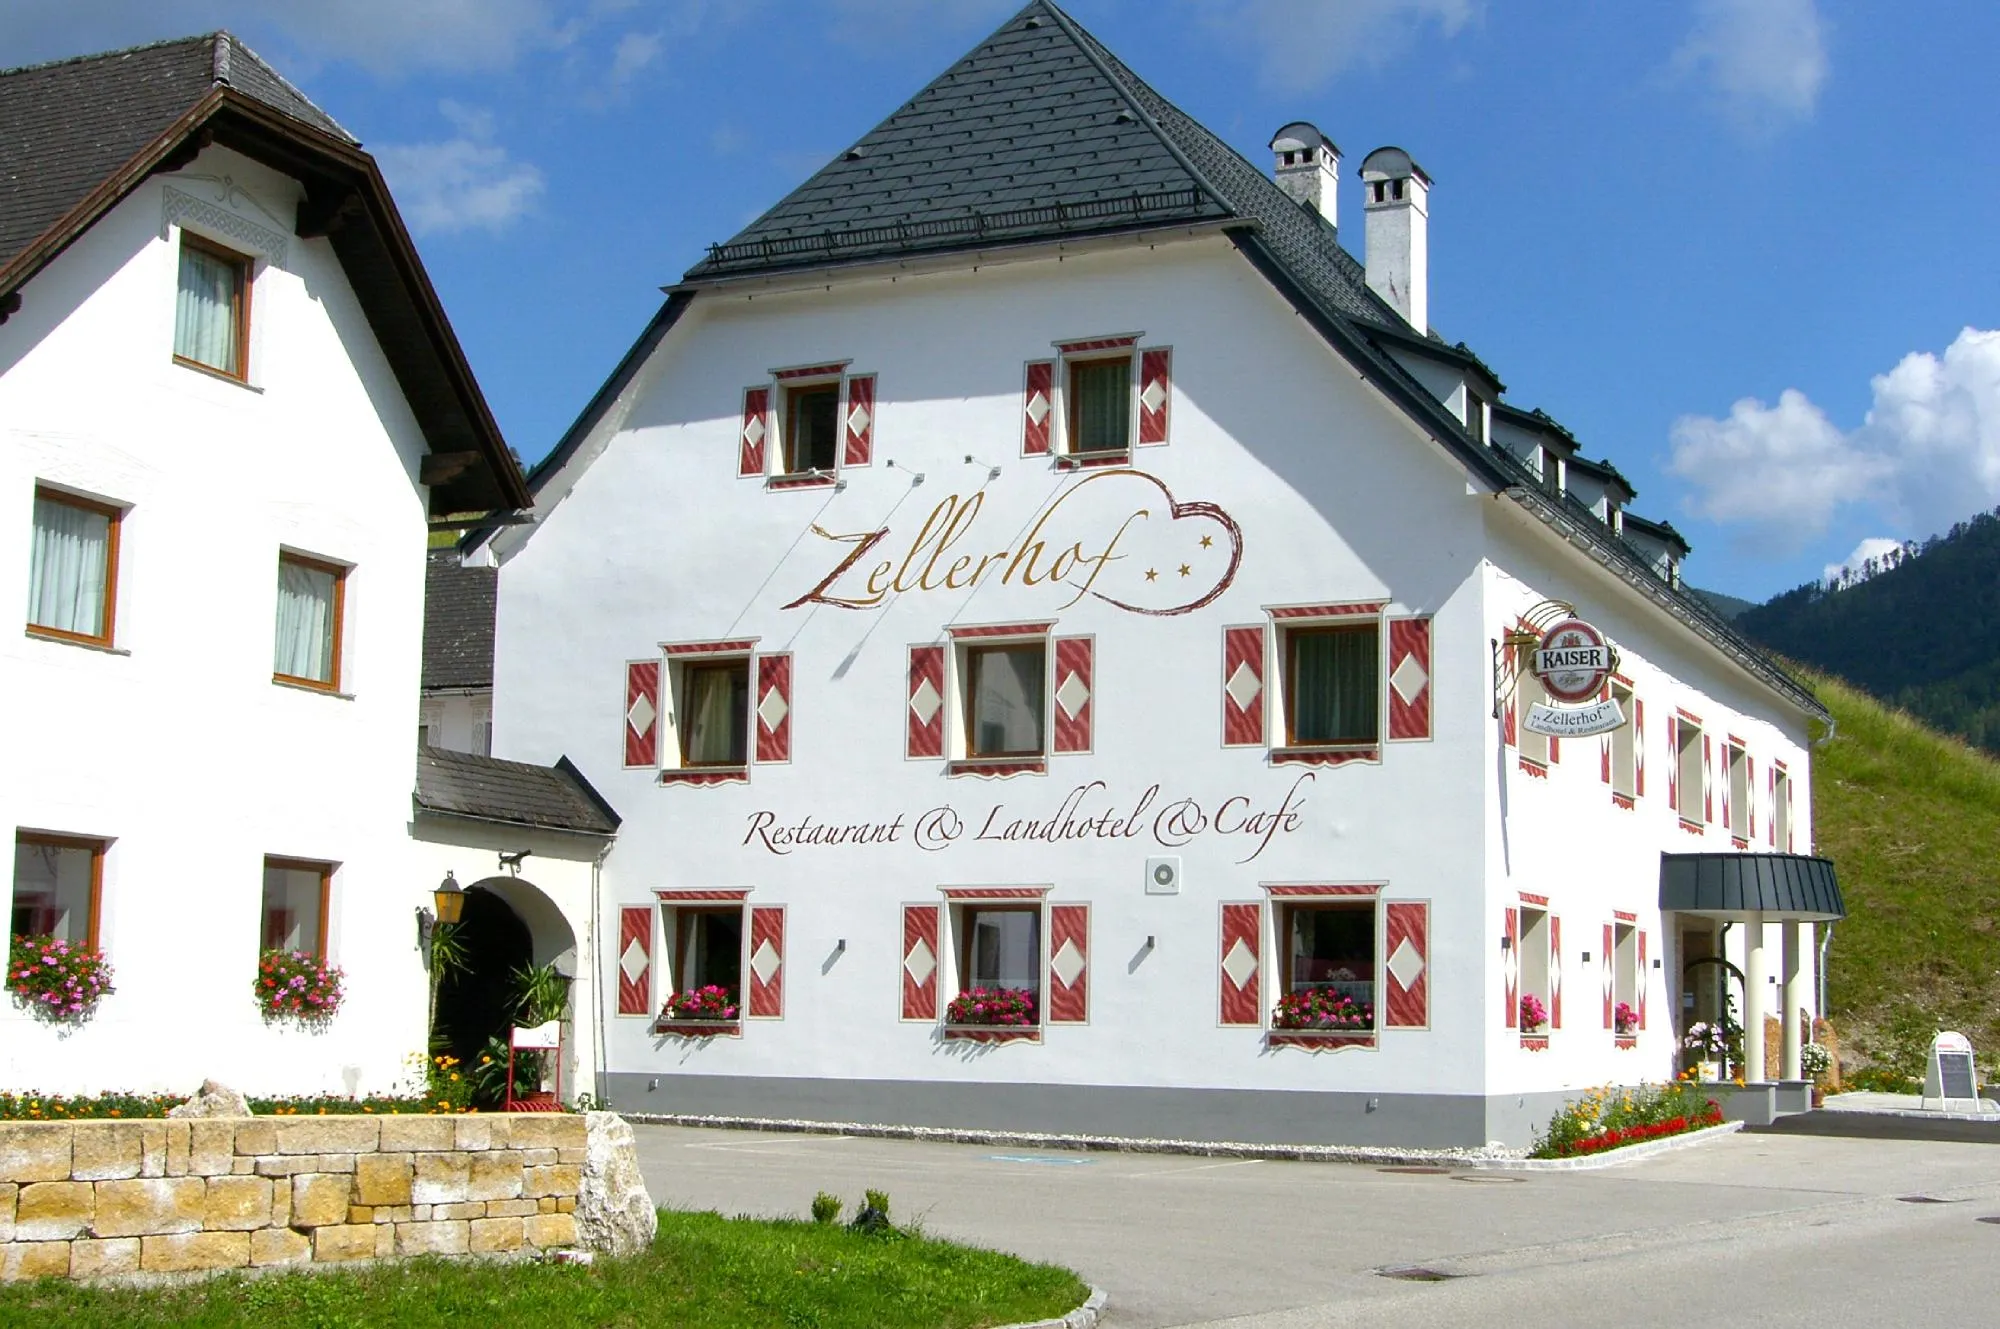 Building hotel Landhotel Restaurant Zellerhof